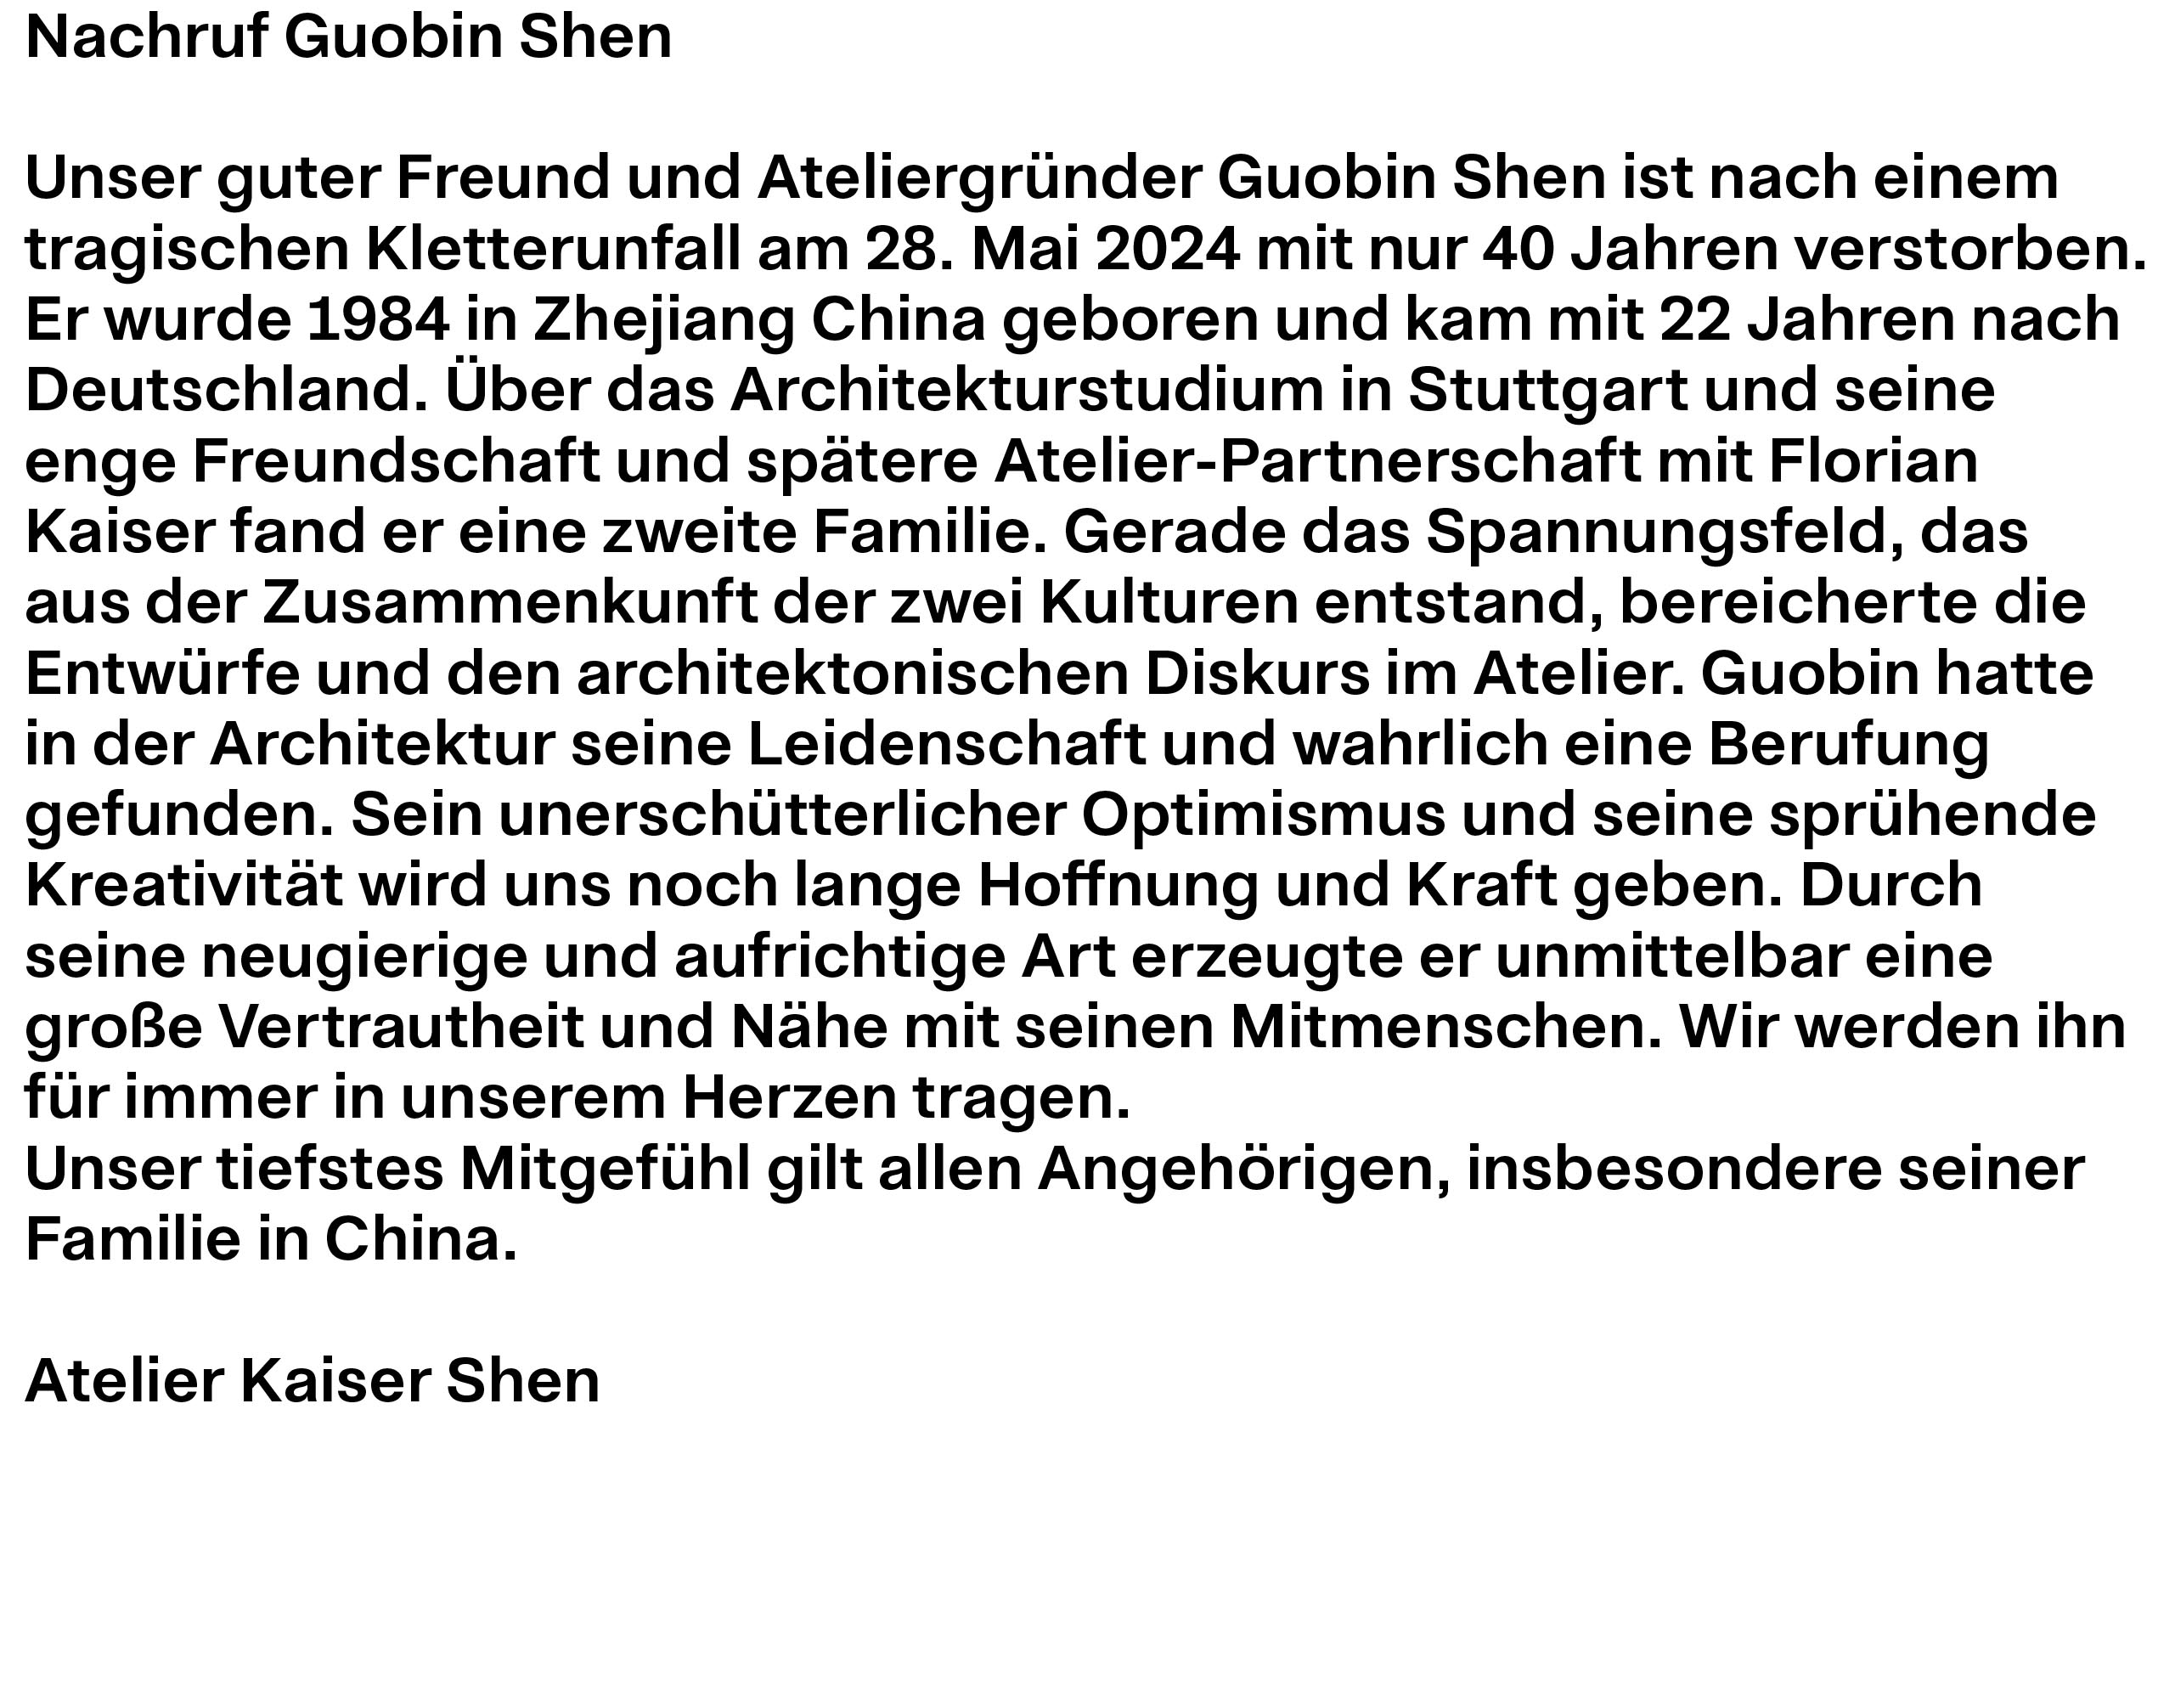 Guobin Shen * 01.03.1984  † 28.05.2024